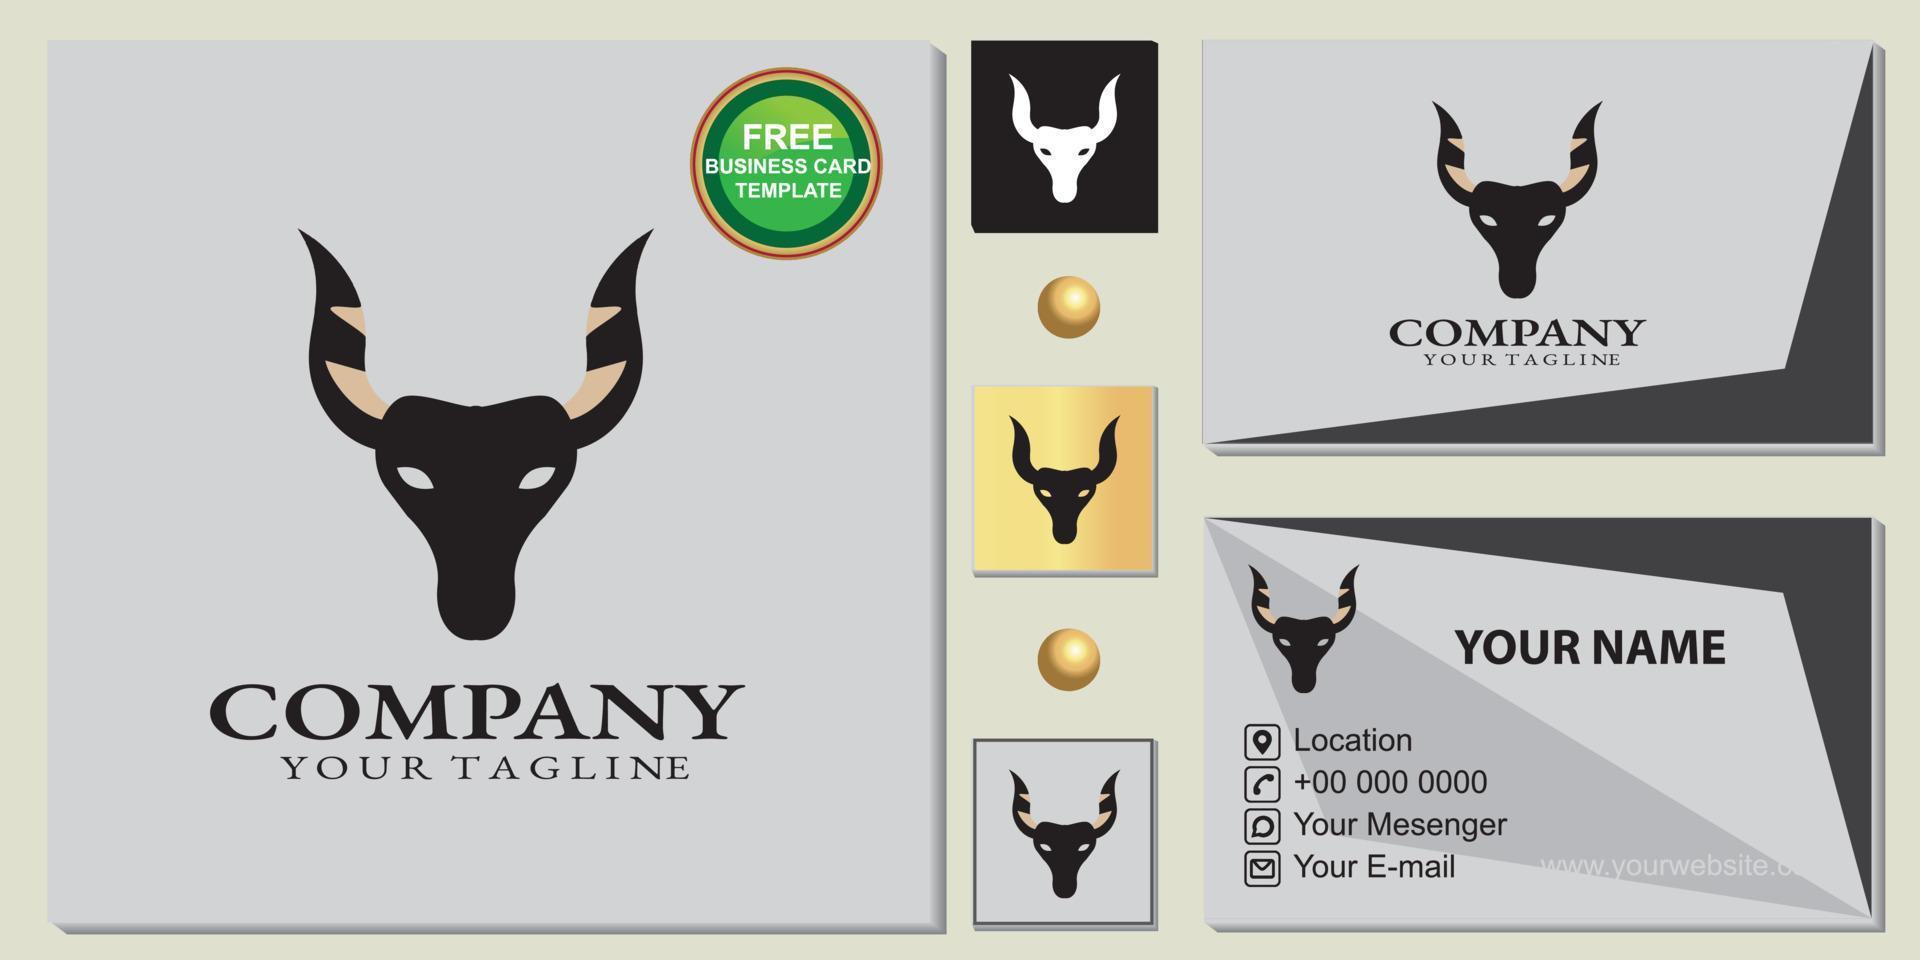 elegante logotipo de toro, plantilla de tarjeta de visita premium simple y gratuita, vector eps 10